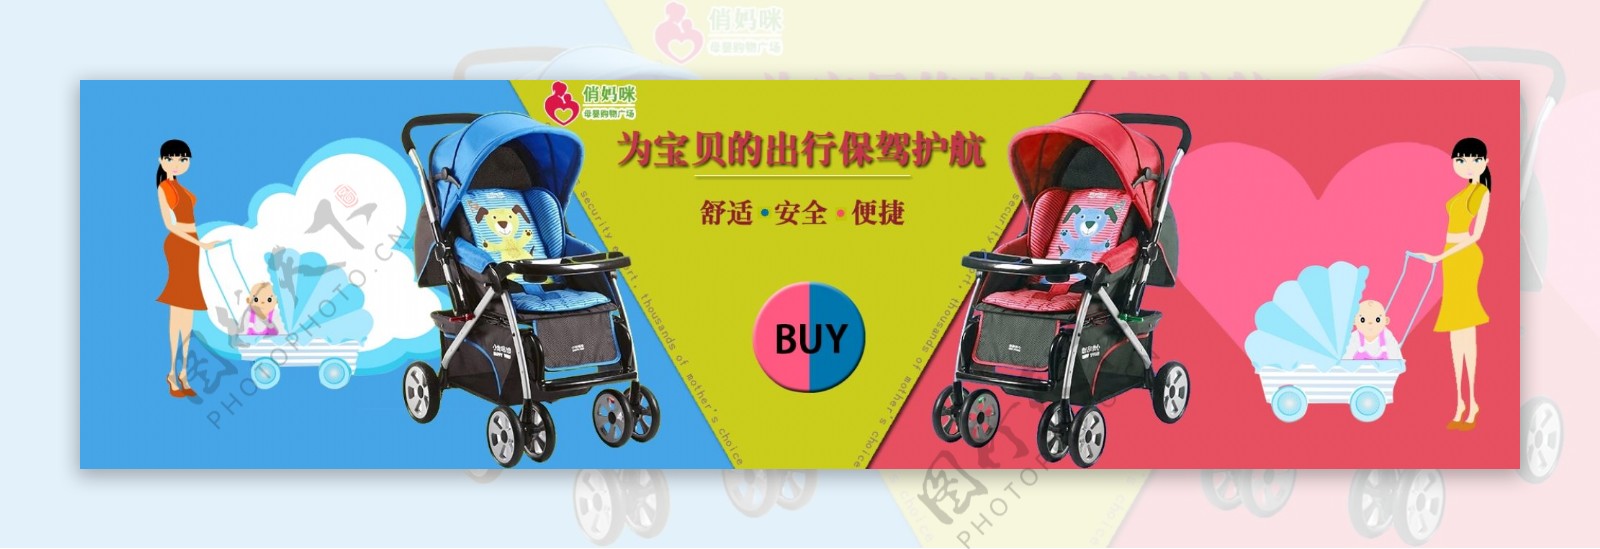 母婴用品儿童车小推车座椅海报图片